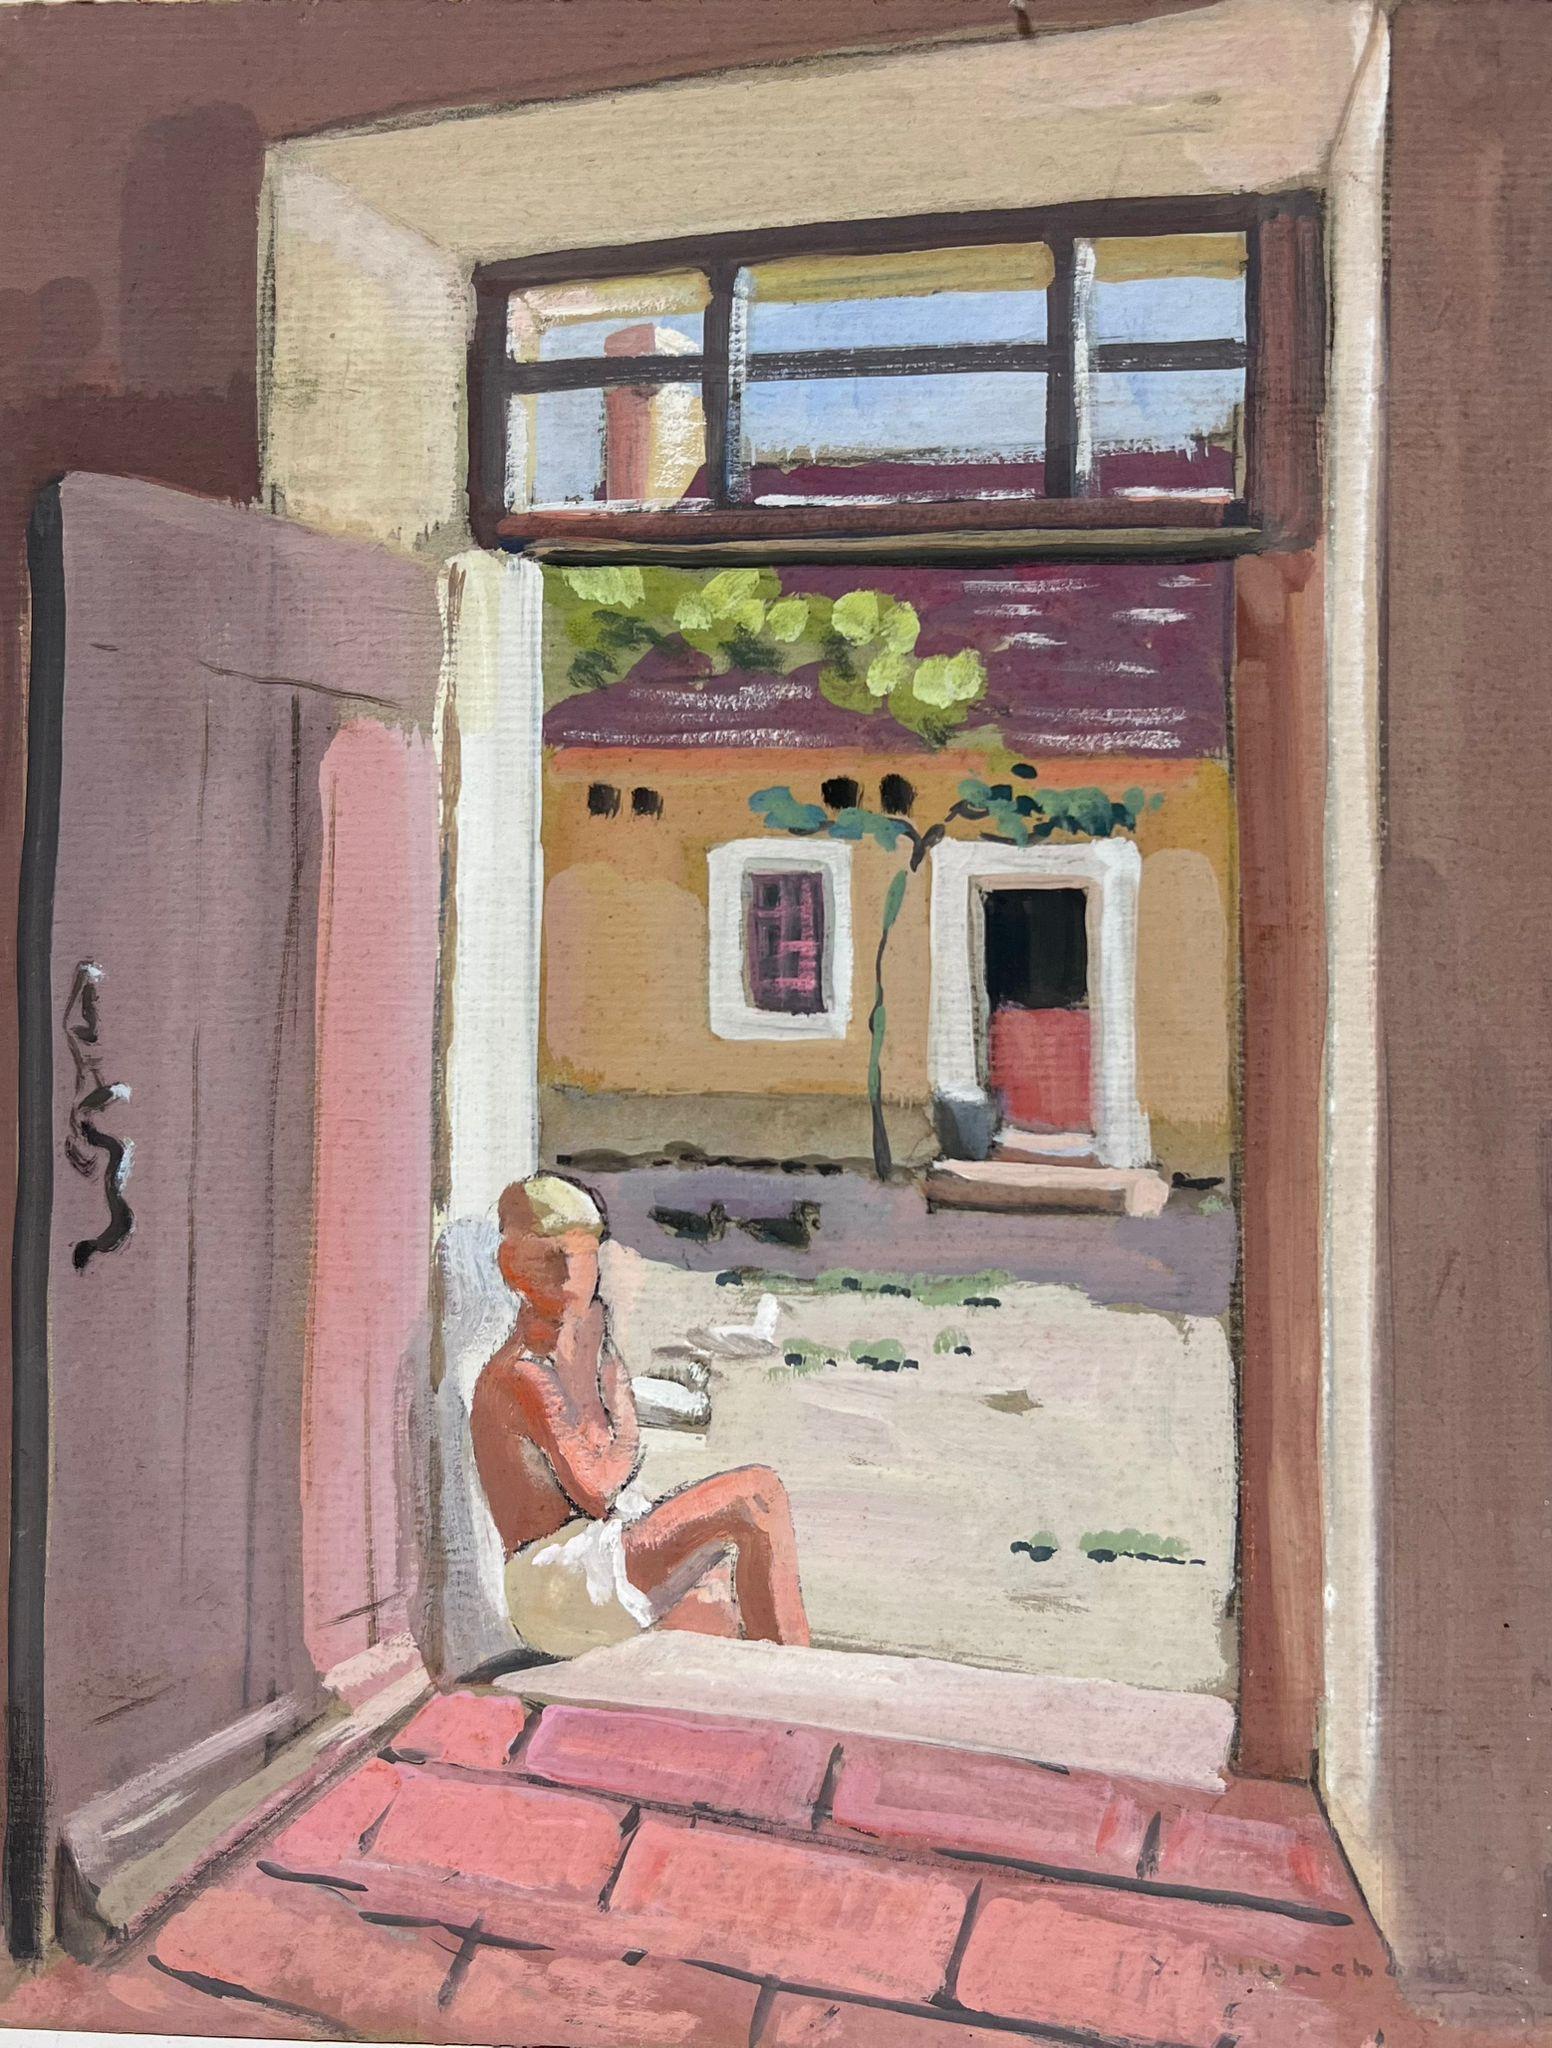 Figurative Painting Y. Blanchon - Mannequin impressionniste français des années 1930 encadré de porte de maison en pierre rose 